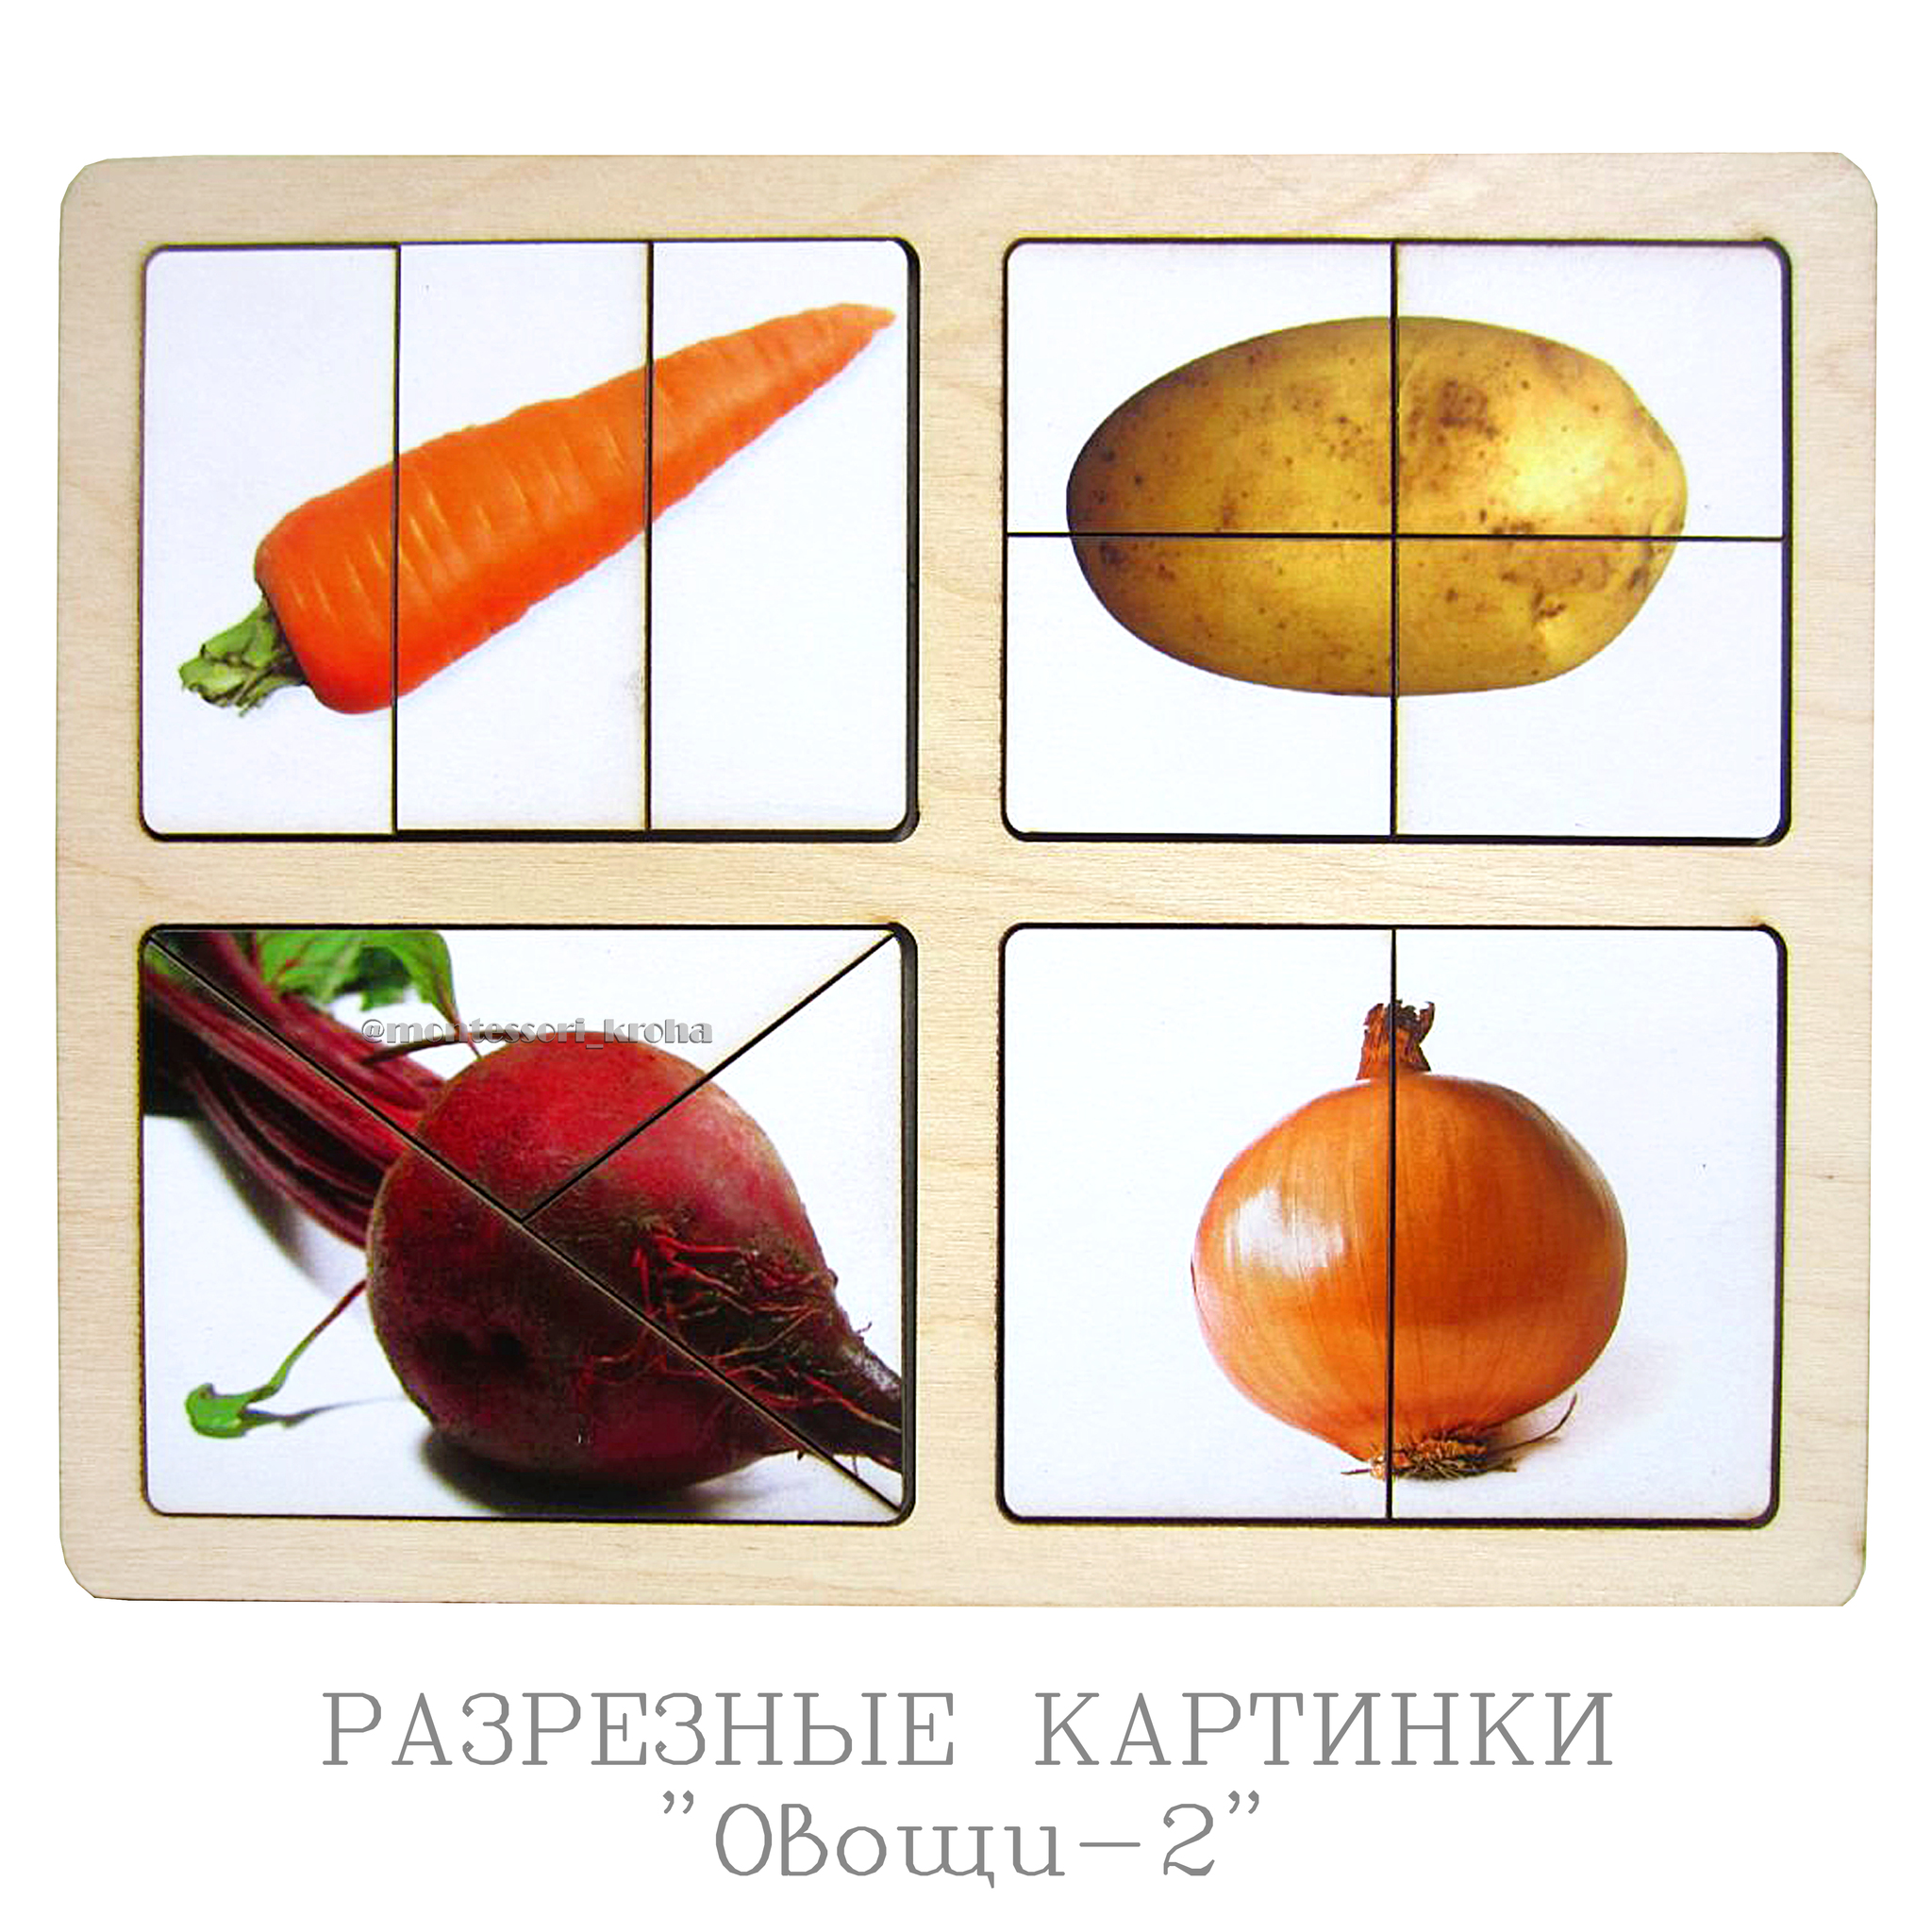 Разрезные картинки овощи